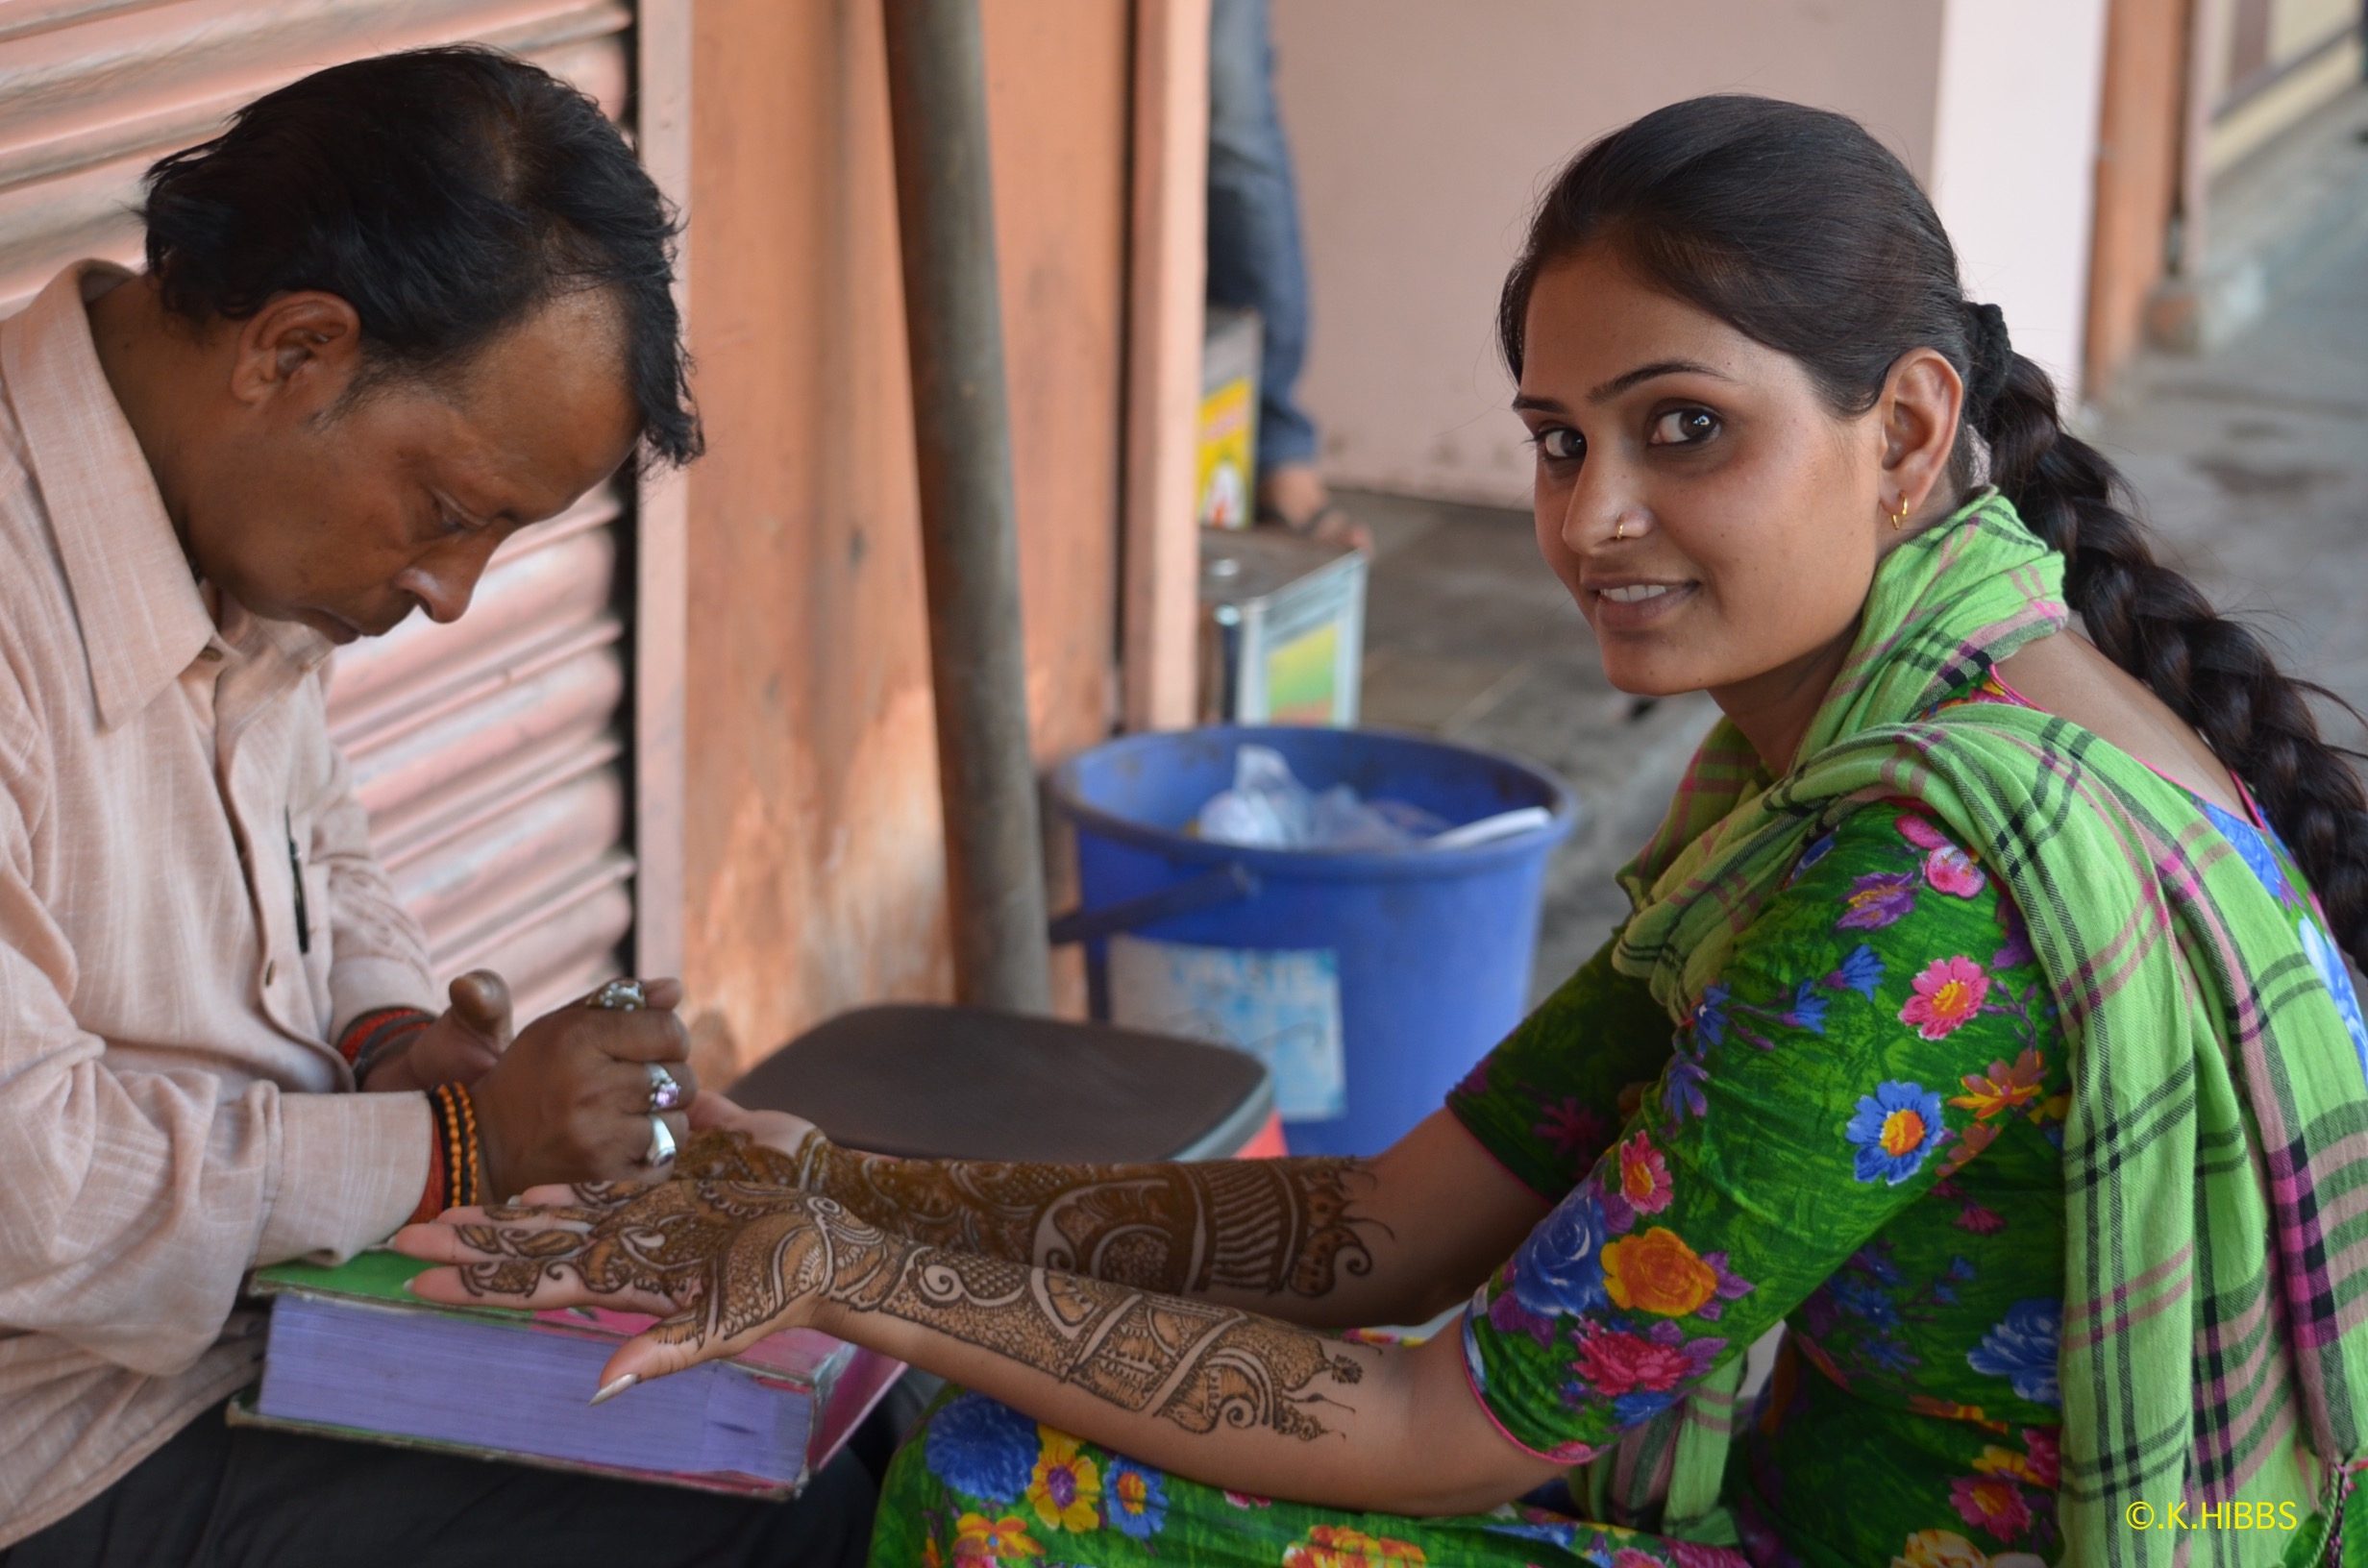 12 jours en Inde du Nord/ aufildeslieux.fr/ Future mariée se faisant tatouer au henné©K.Hibbs